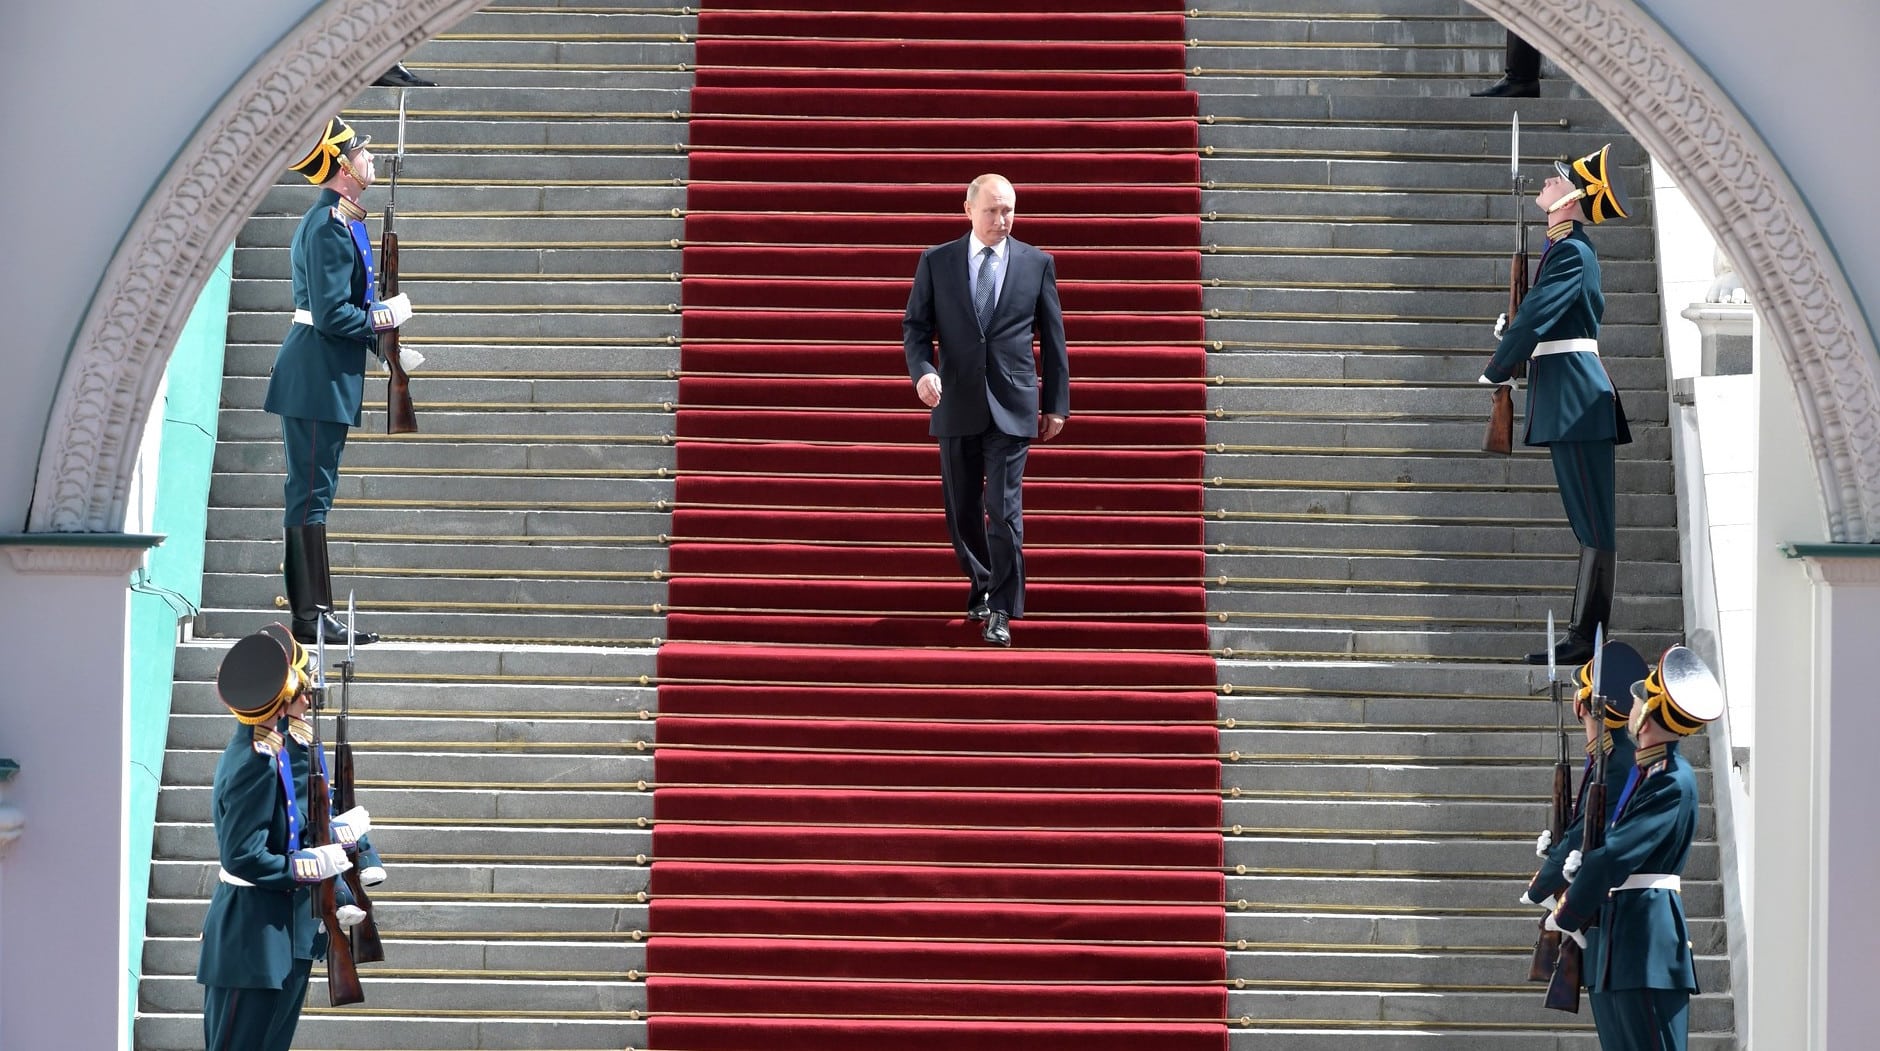 La vergonzosa caída de Putin por unas escaleras que aumentan las especulaciones sobre su salud